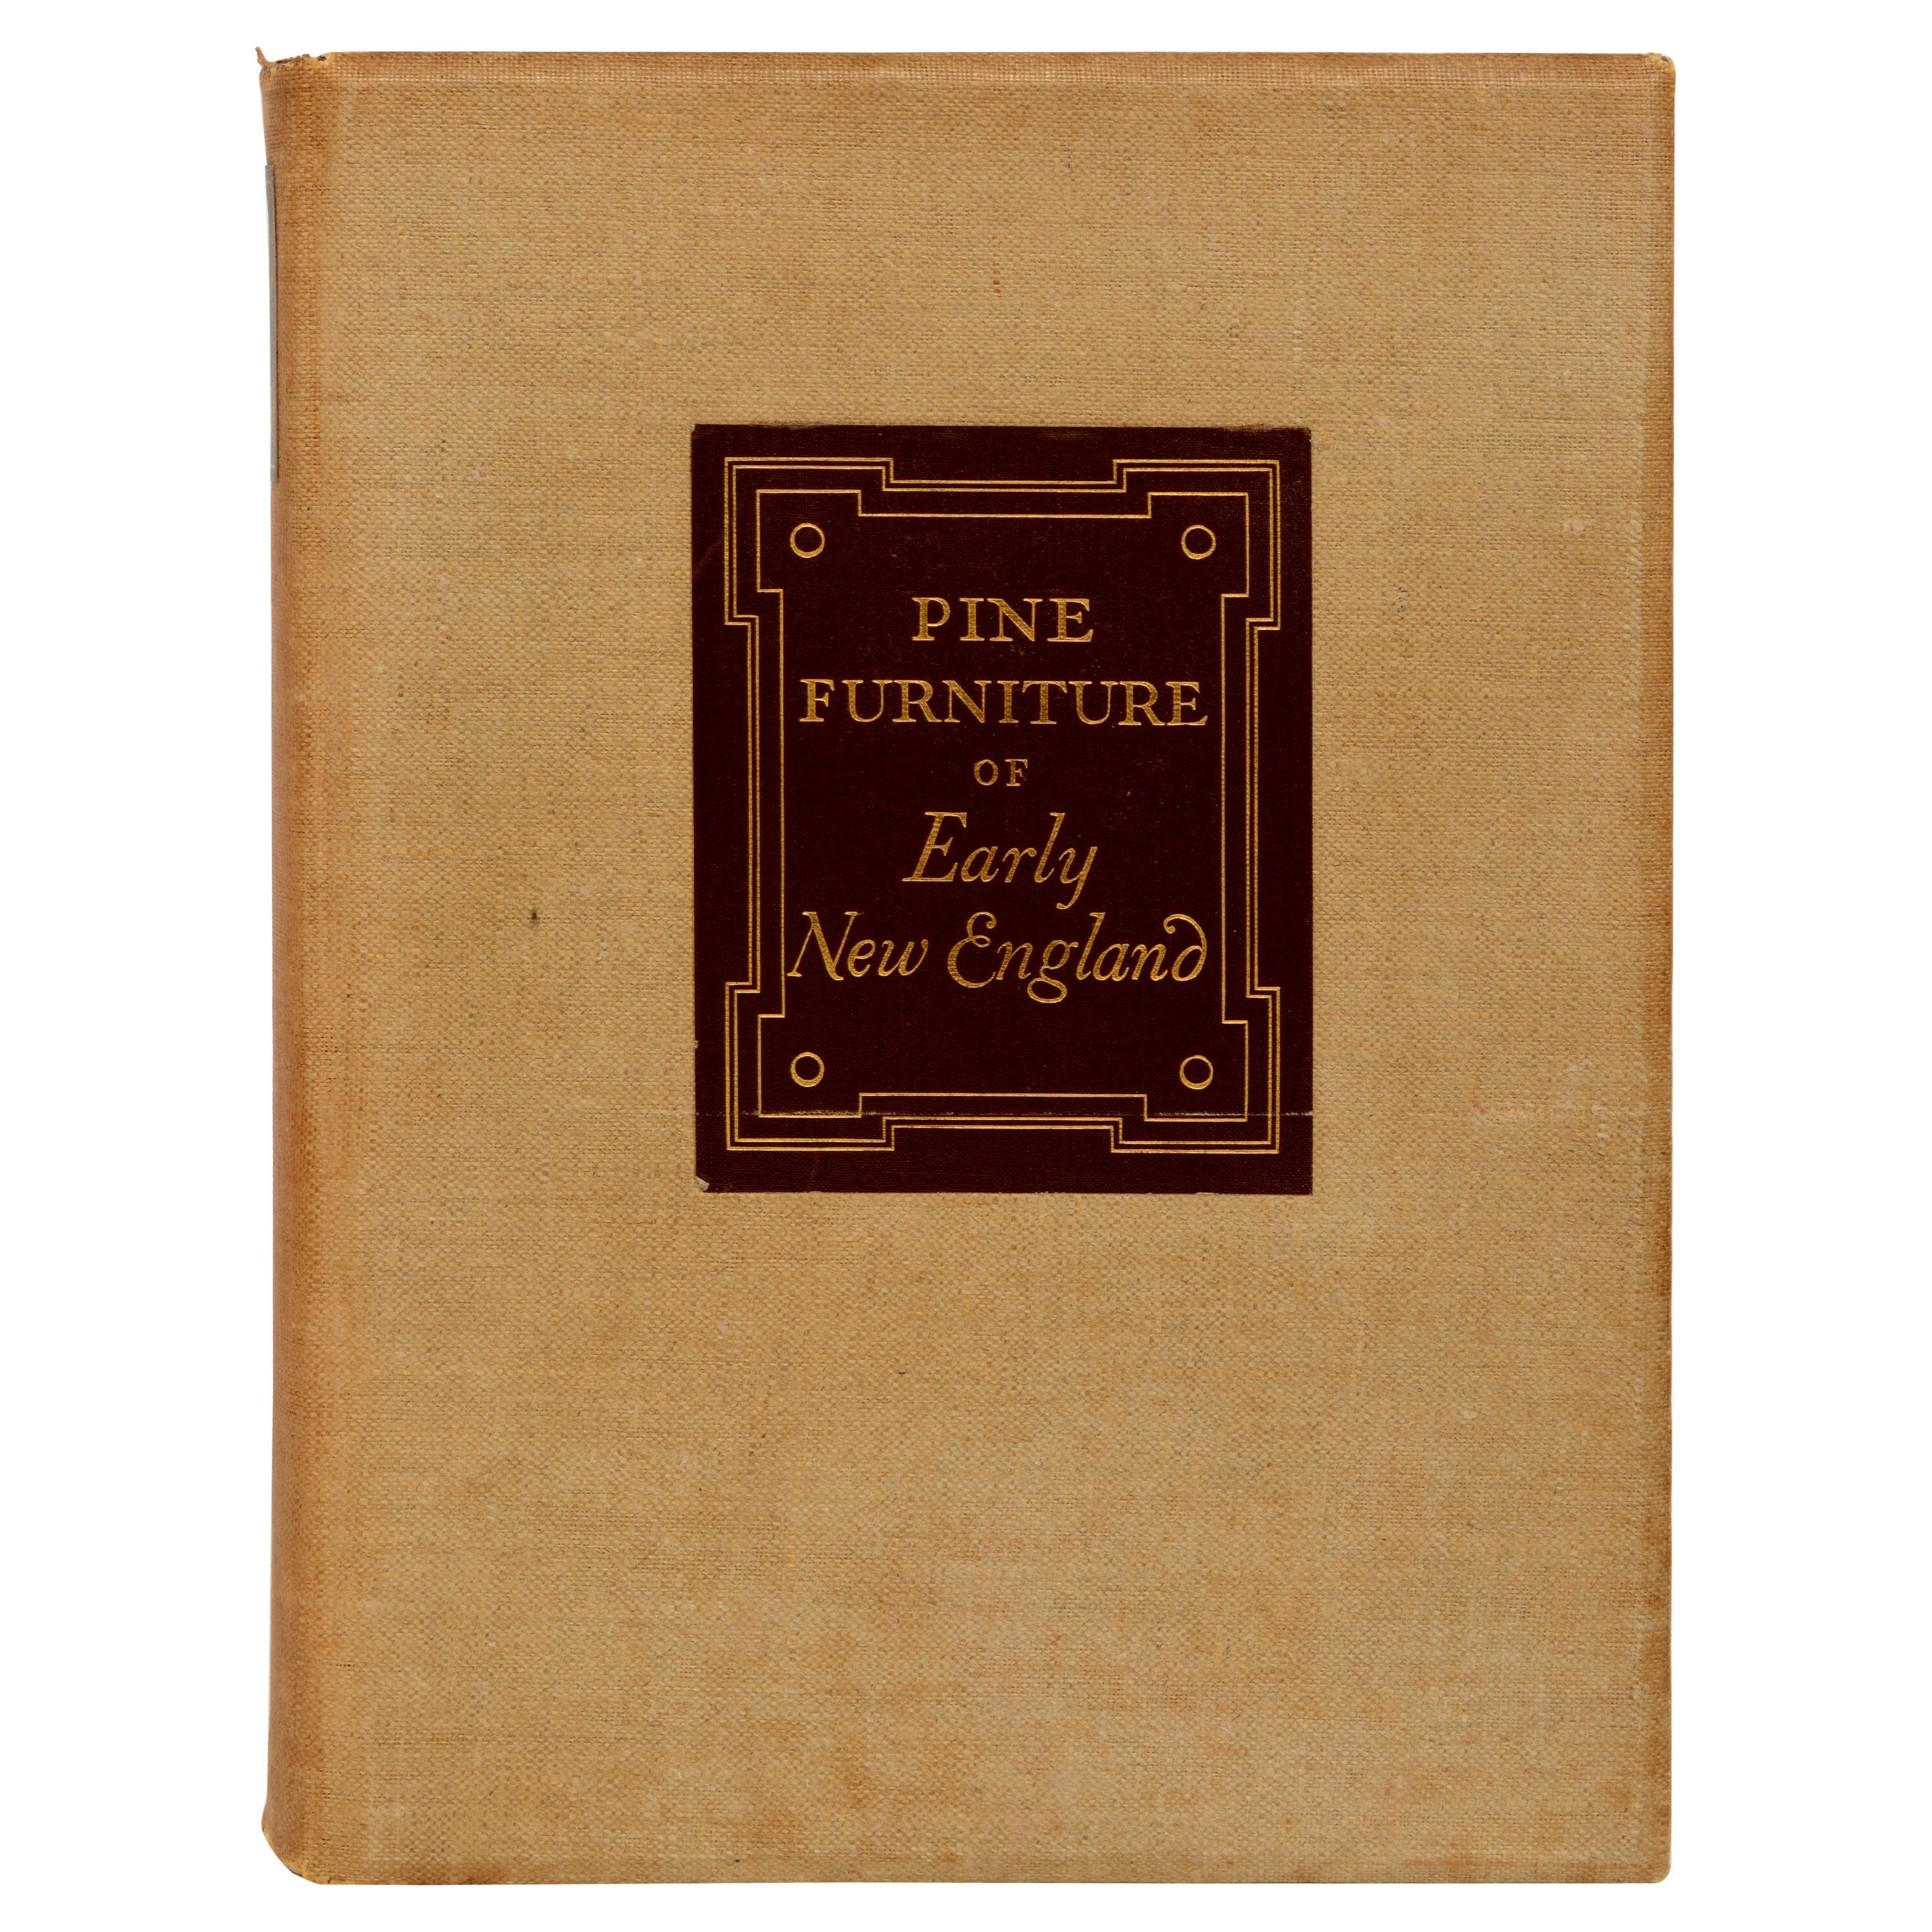 The Pine Furniture of Early New England (Meubles en pin de la Nouvelle-Angleterre) par Russell Kettell, 1ère édition limitée